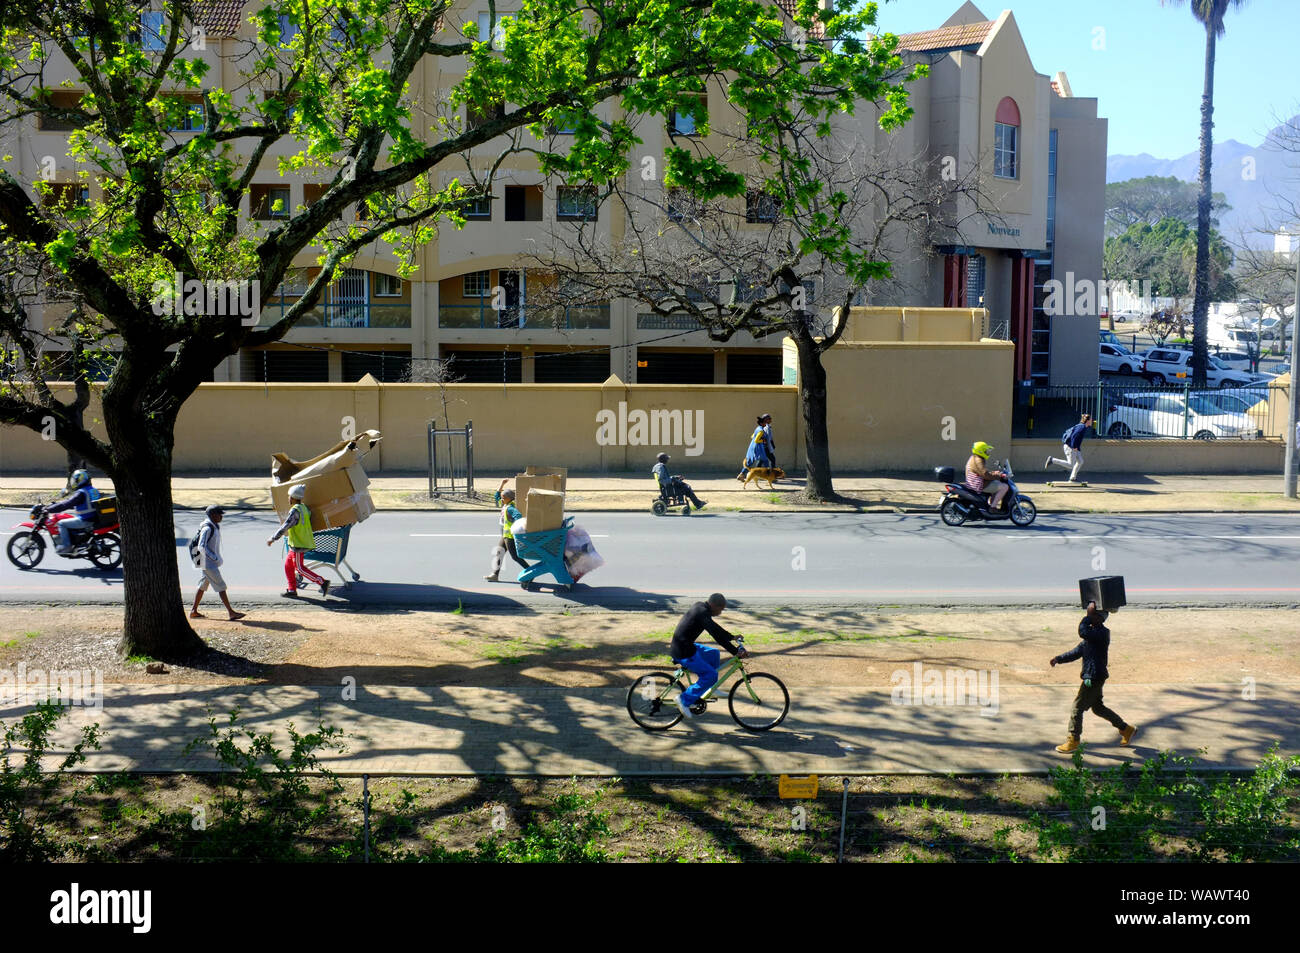 Une scène de rue à l'université d'Afrique du Sud ville de Stellenbosch Banque D'Images